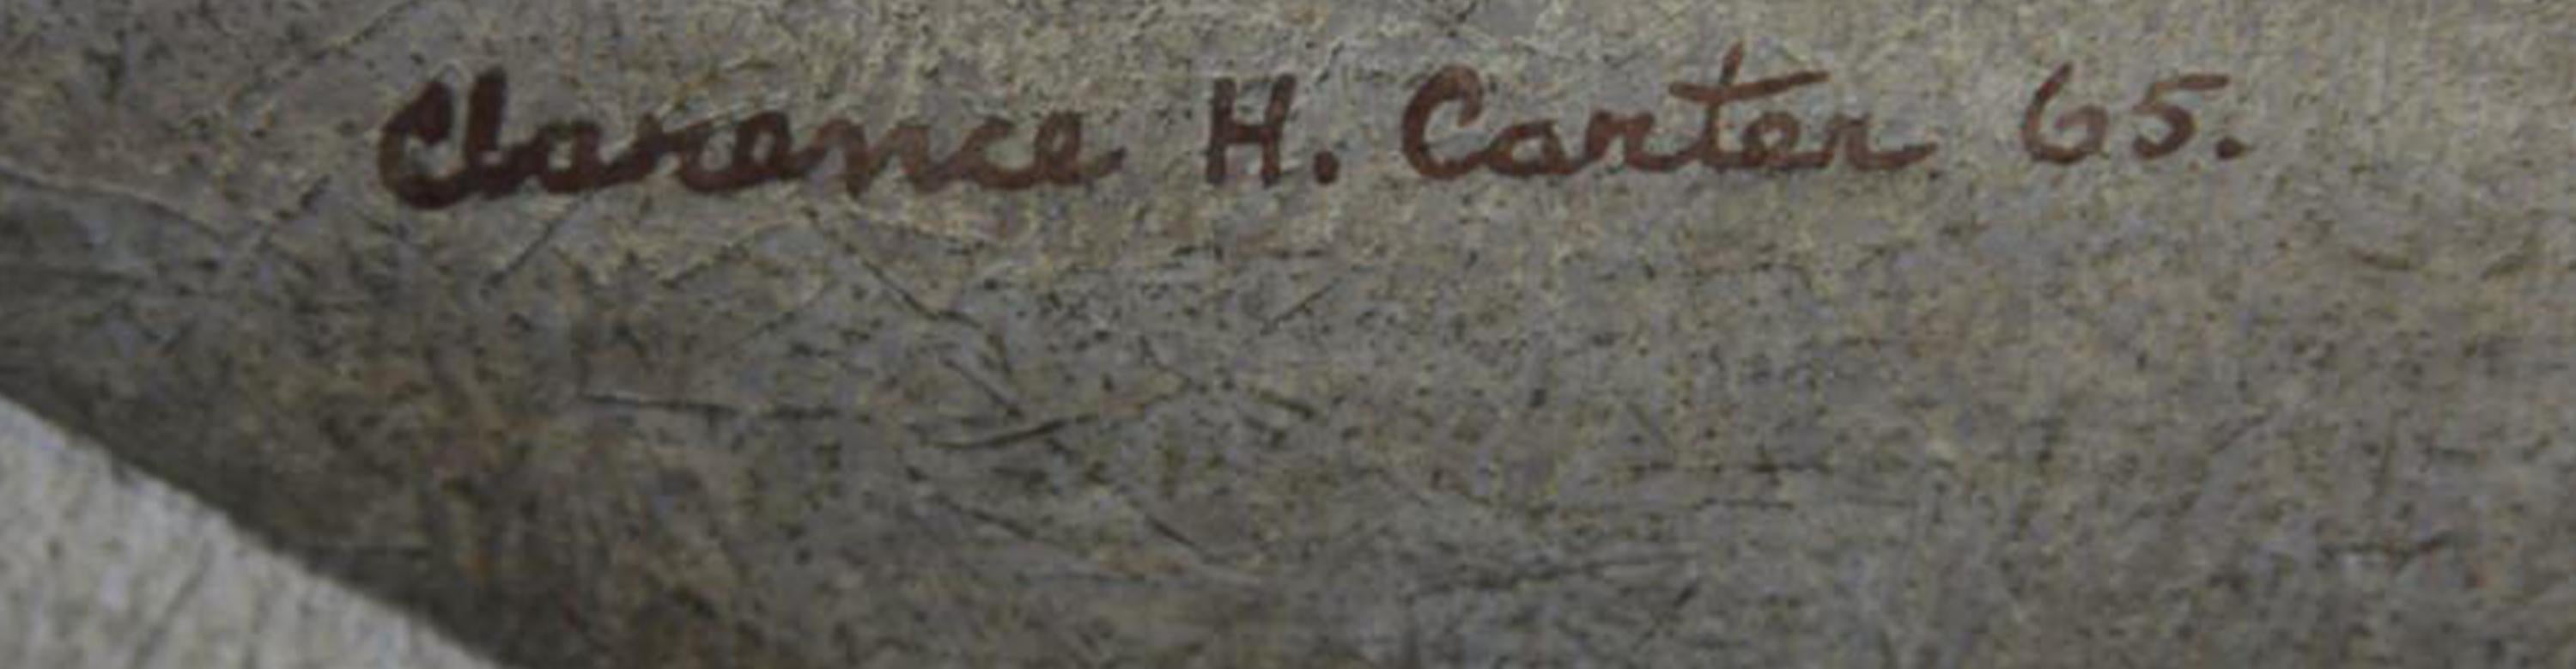 Clarence Holbrook Carter (Amerikaner, 1904-2000)
Luftkammer, 1965
Collage, Graphit und Gouache auf Papier
Signiert und datiert oben links
30 x 22 Zoll

Clarence Holbrook Carter erlangte einen nationalen künstlerischen Erfolg, der unter den Künstlern